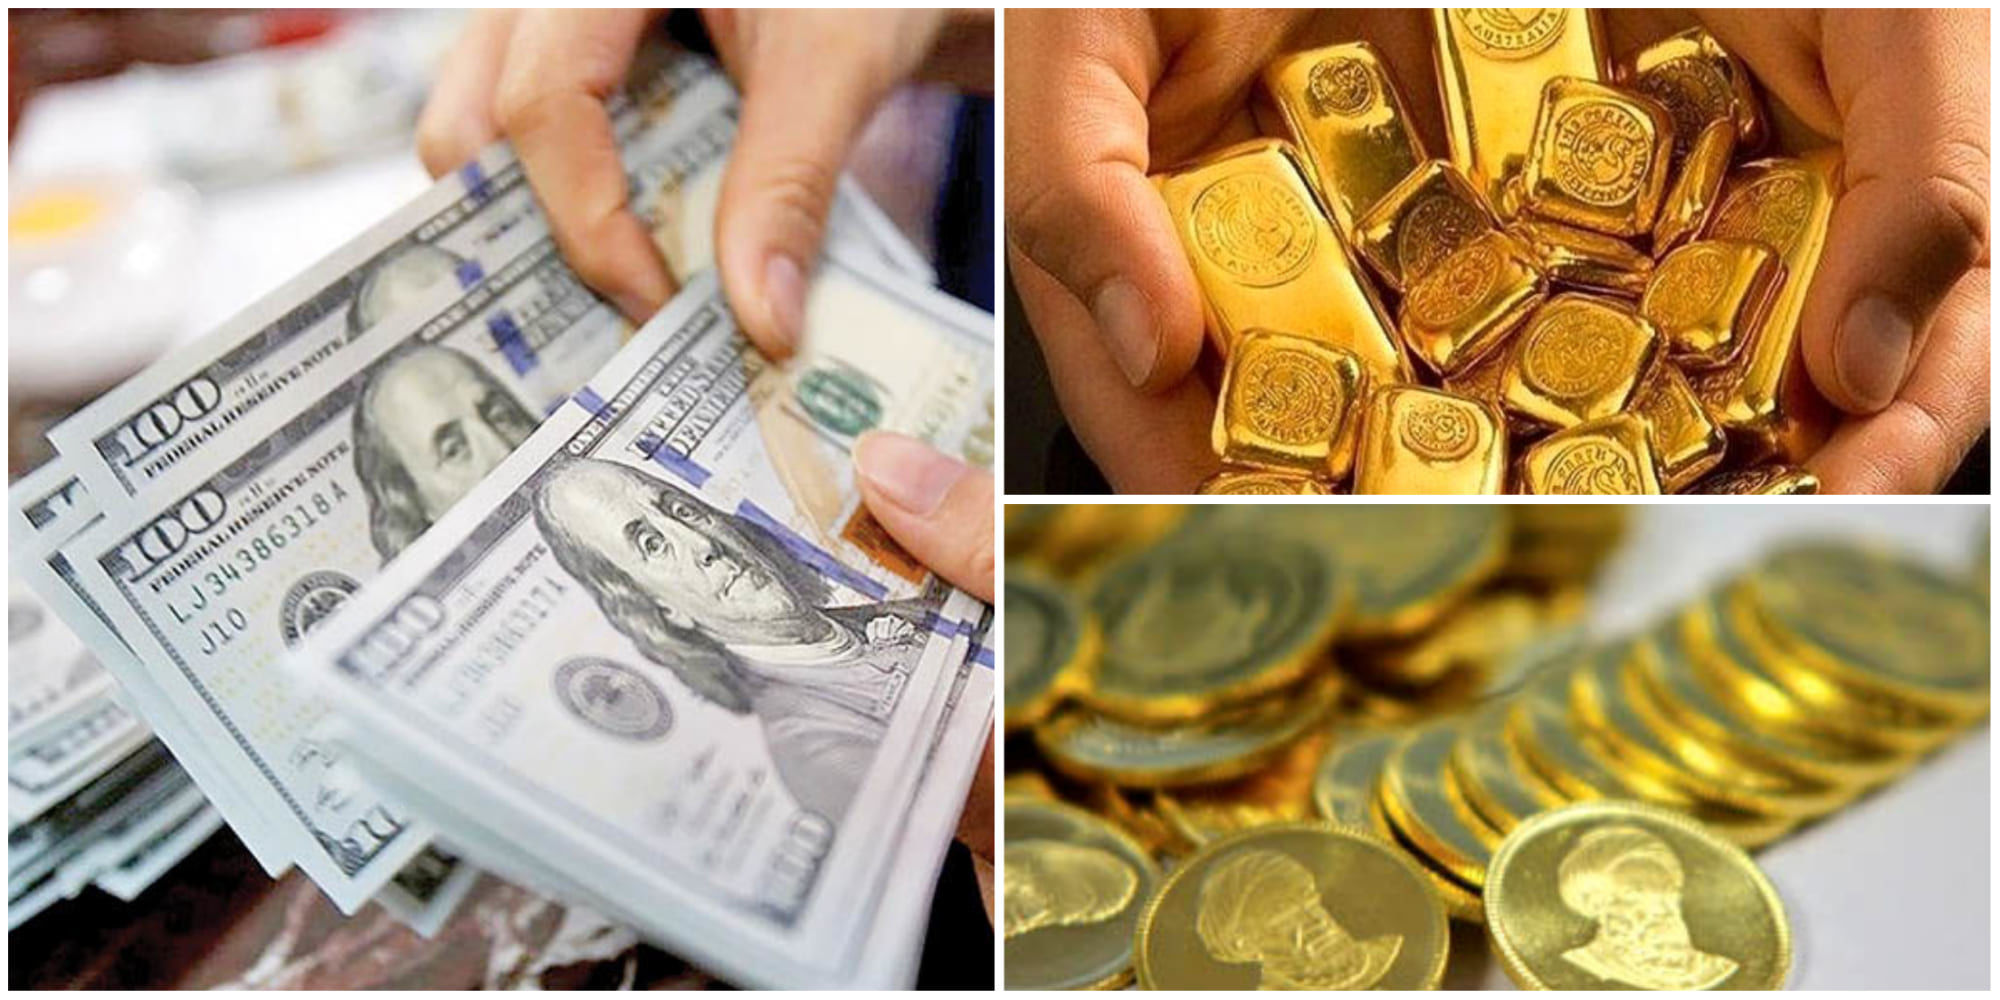 ادامه روند صعودی قیمت طلا و سکه / بازگشت سکه به کانال 29 میلیون تومان